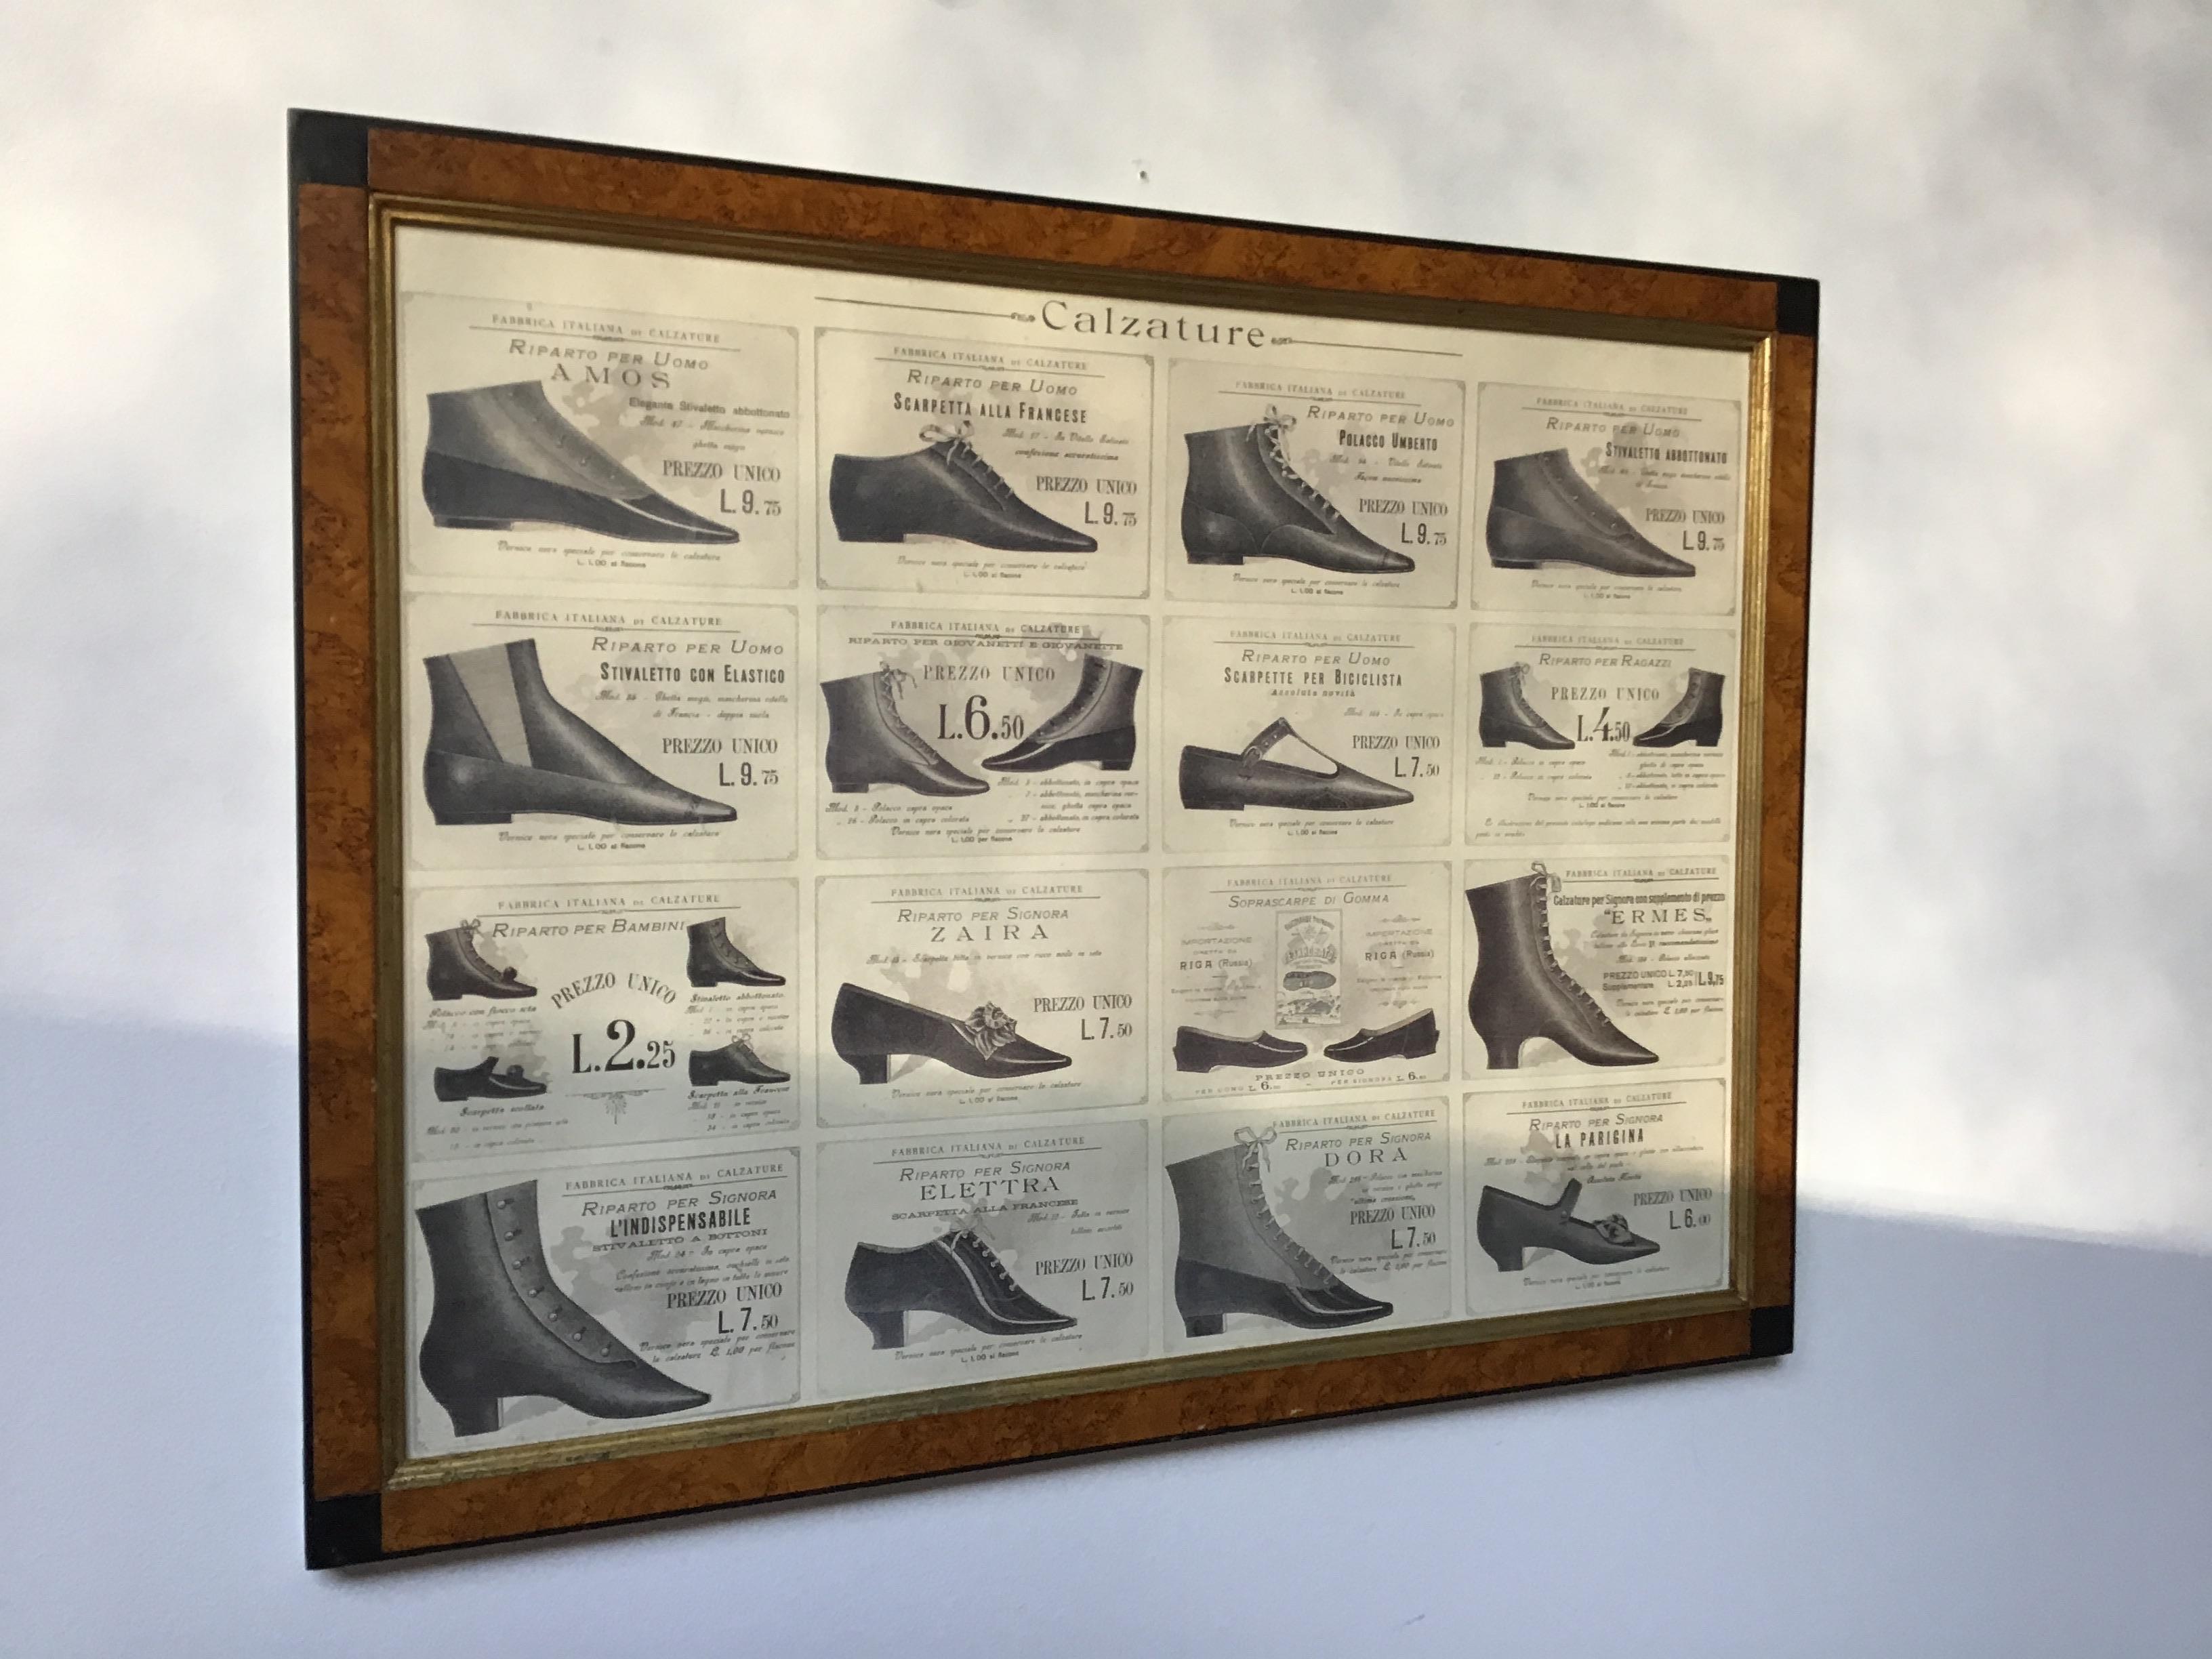 publicité pour des chaussures italiennes des années 1880 provenant d'une propriété de Southampton, NY.